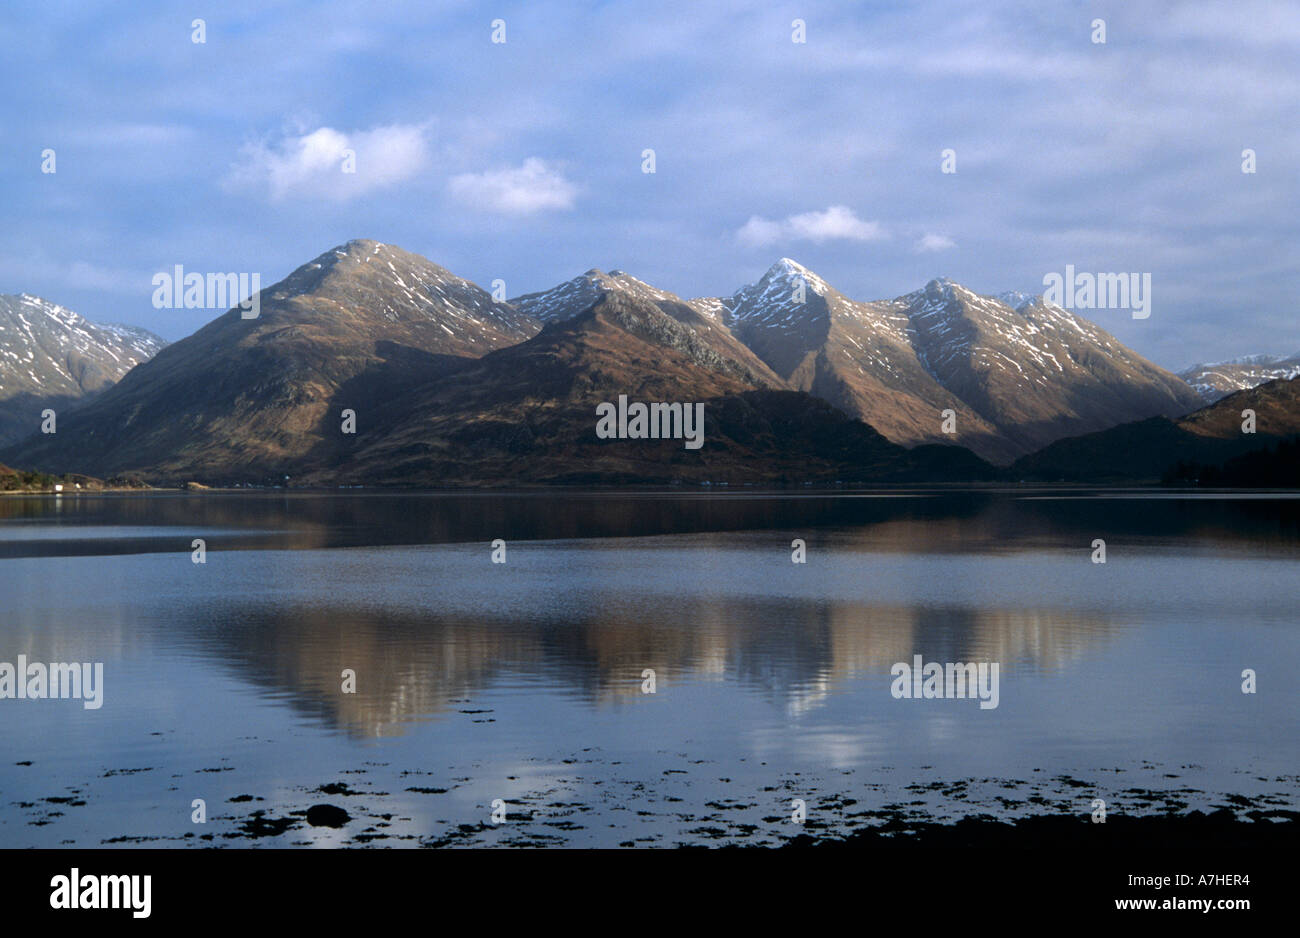 The Five Sisters mountain range. Kintail, Scotland Stock Photo - Alamy